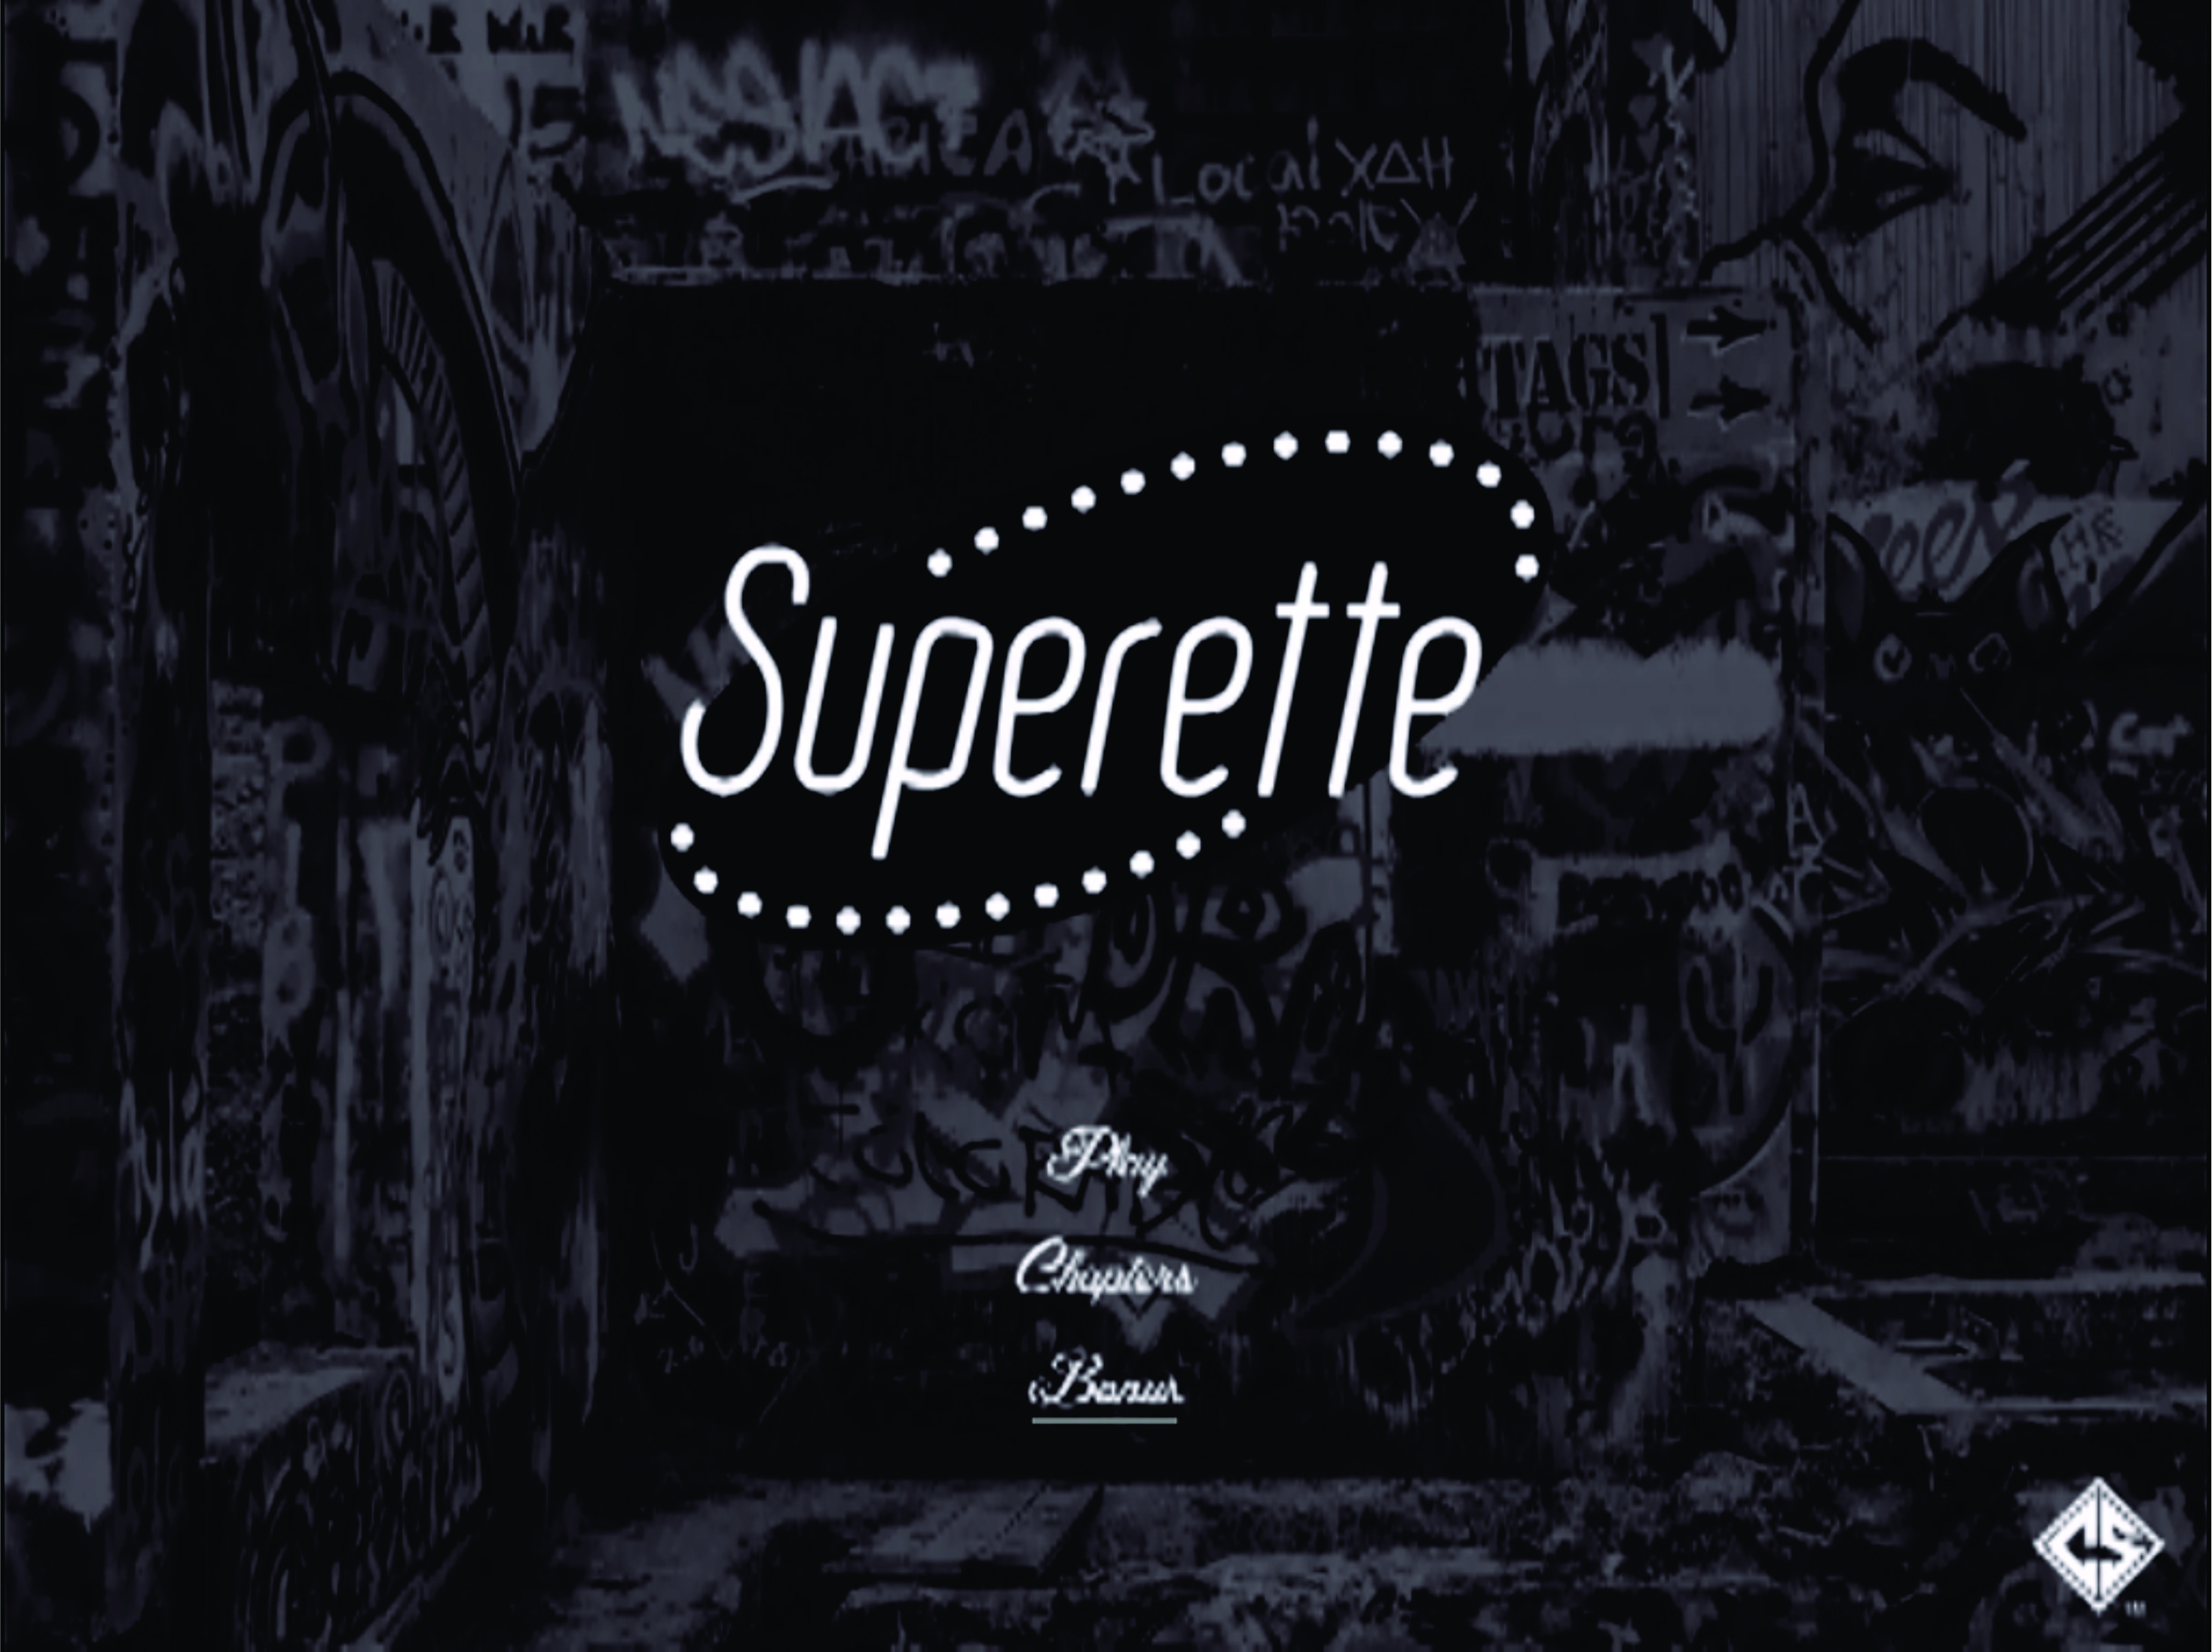 Cornerstore - Superette cover